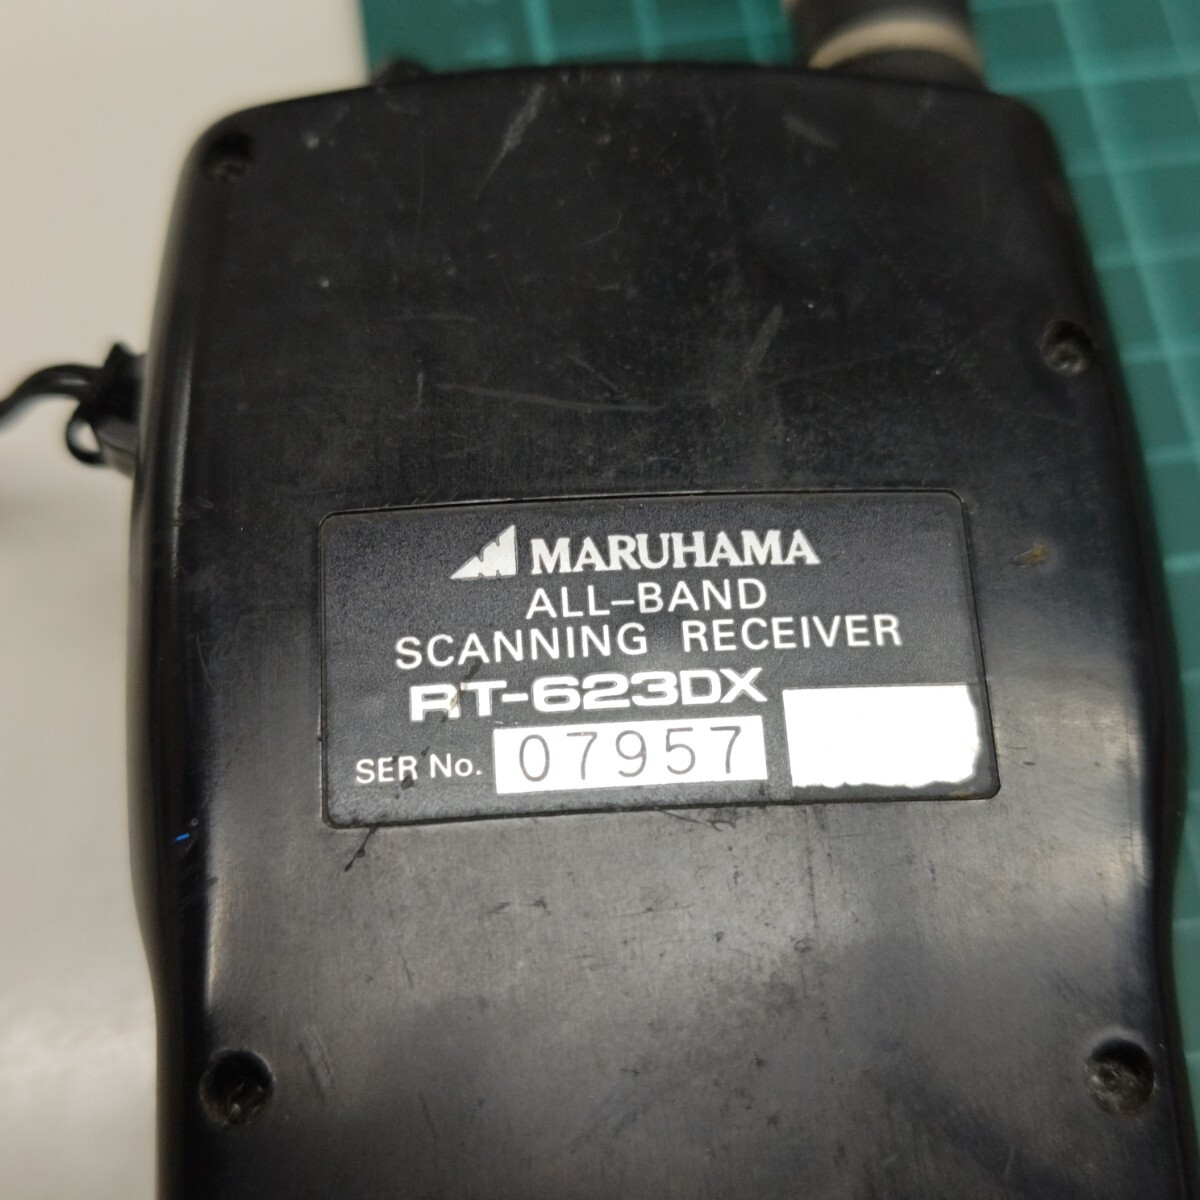 [ утиль ]MARUHAMA RT-623DX широкий obi район приемник 2 частота одновременно прием подслушивание контейнер обнаружение контейнер .